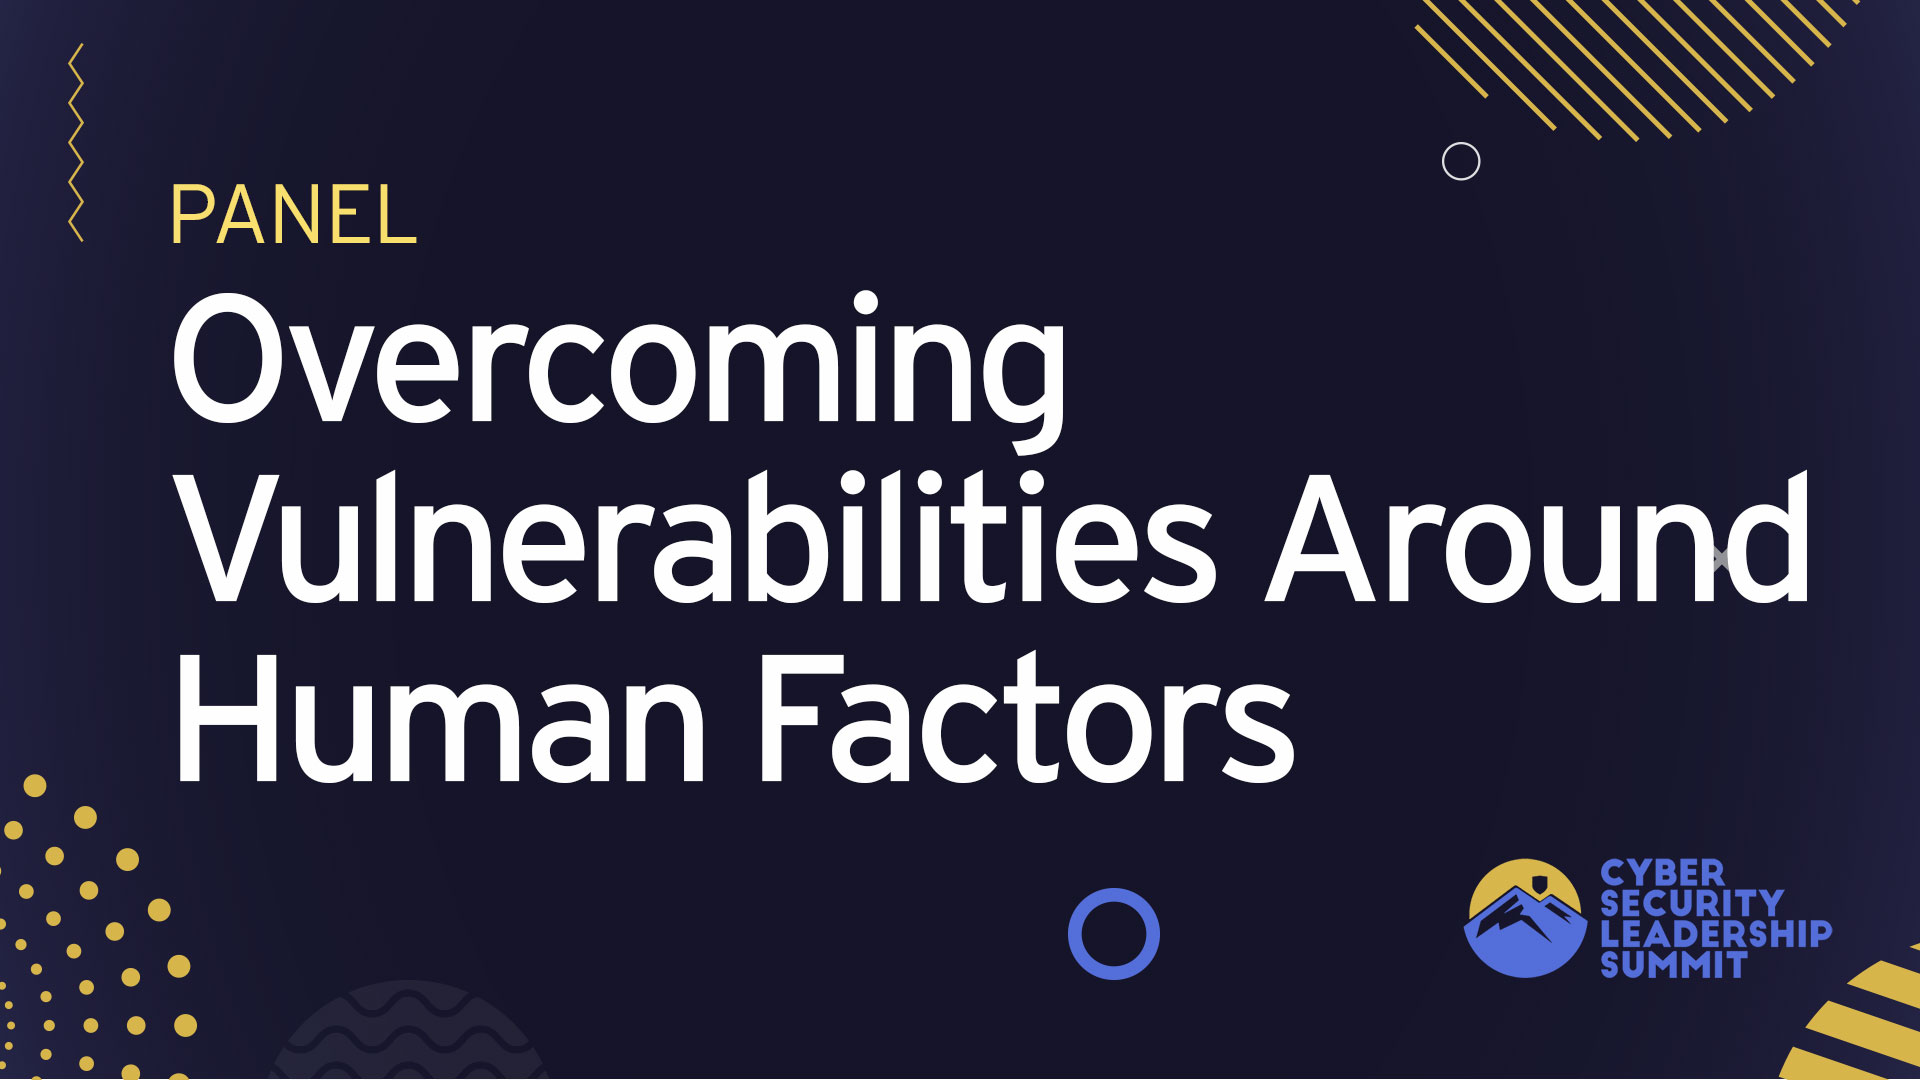 Panel | Overcoming vulnerabilities around Human Factors